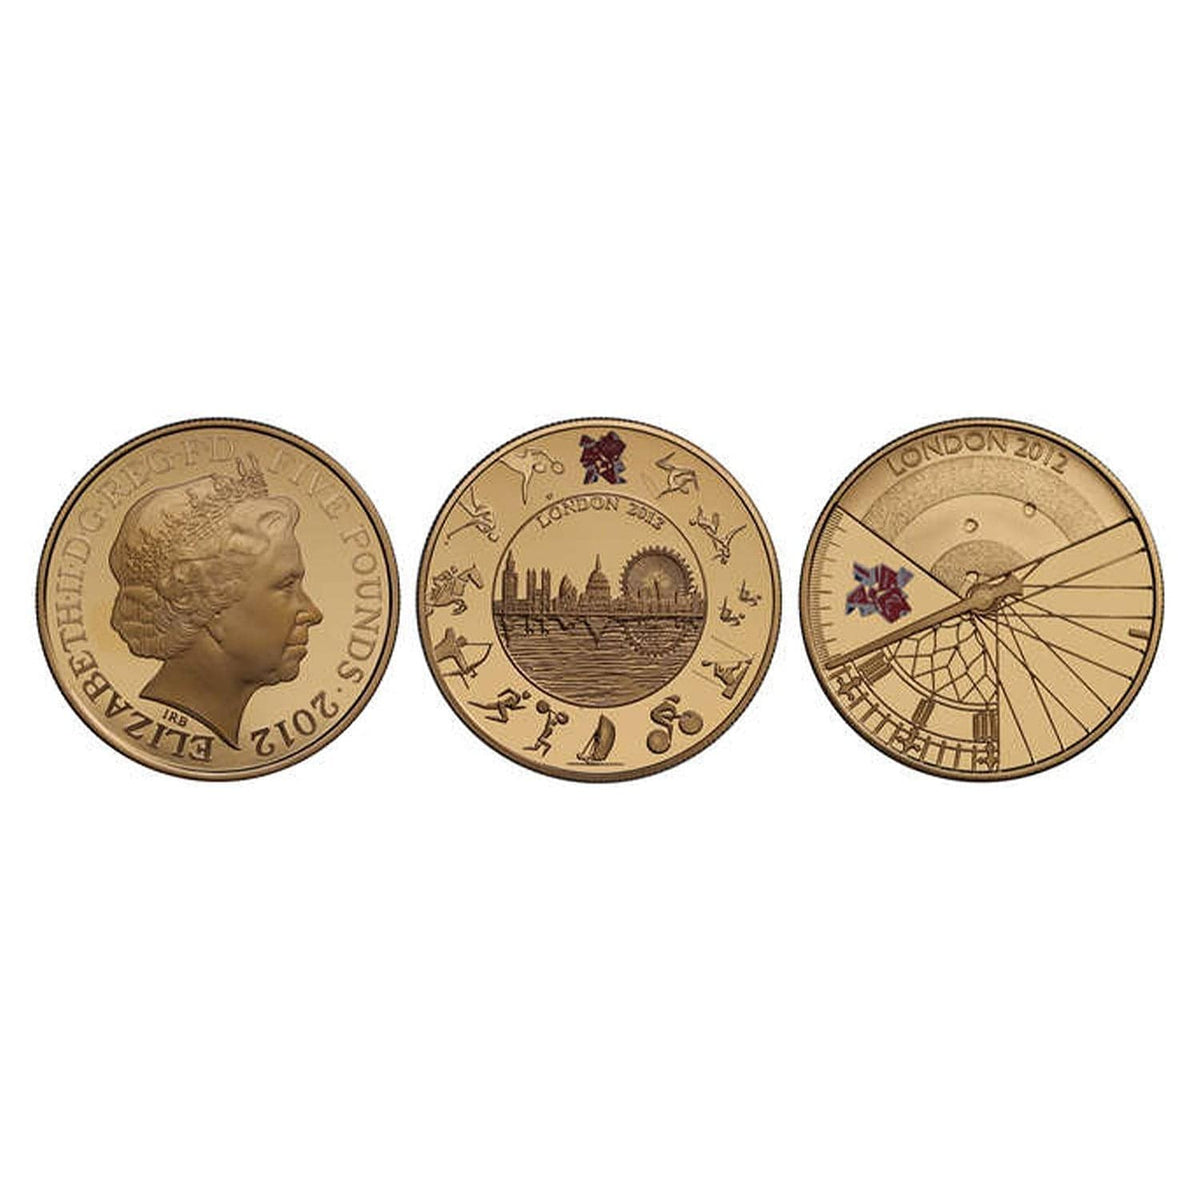 2012年 イギリス ロンドンオリンピック&パラリンピック 5ポンド金貨2枚 